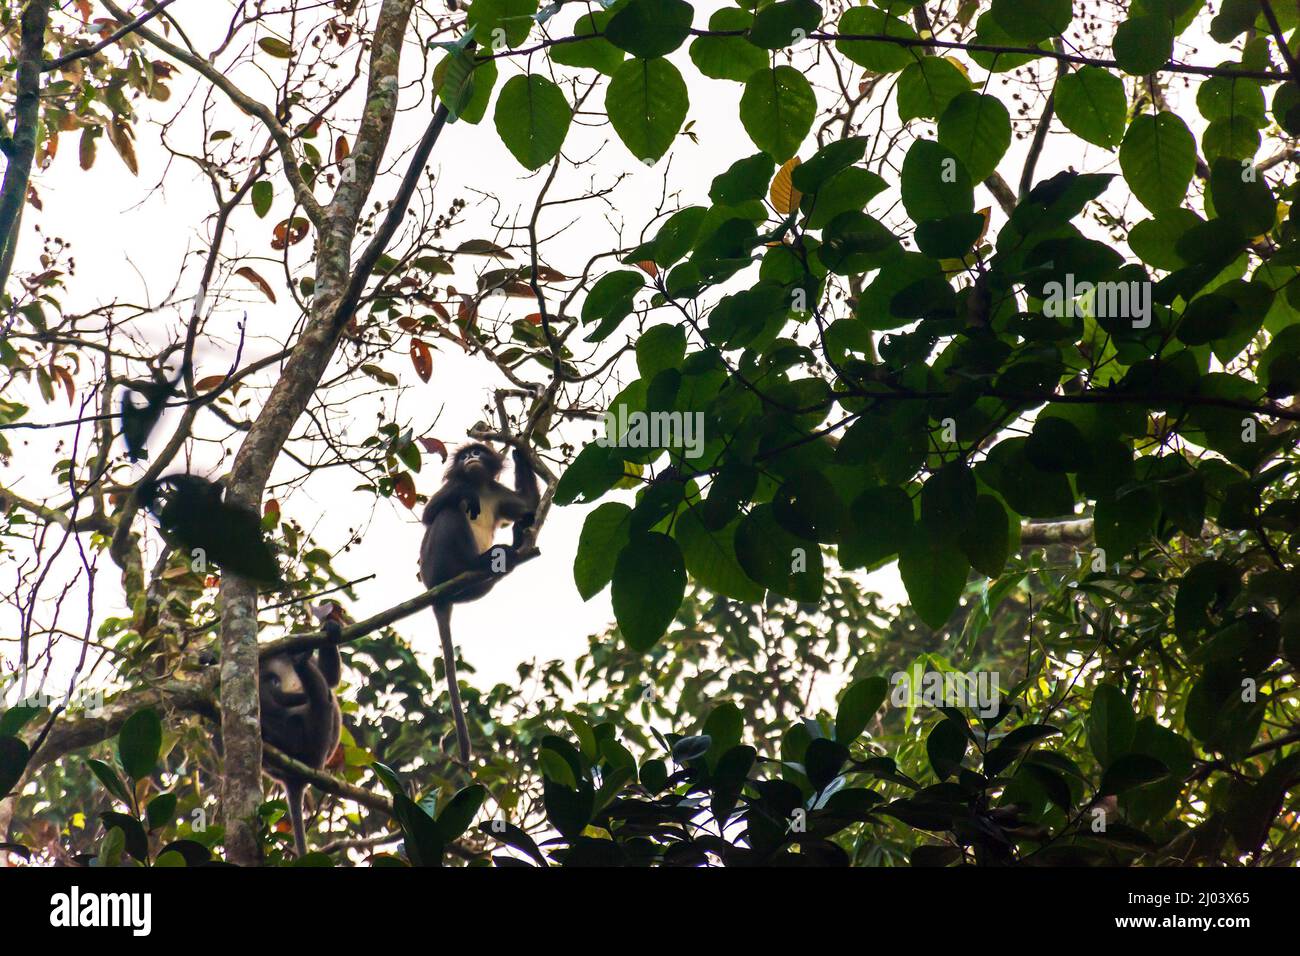 endangered, spectacled, monkey, Phayre's, Leaf, leaf-eating, langur, Monkeys, Trachypithecus phayrei, srimangal, sylhet, bangladesh Stock Photo